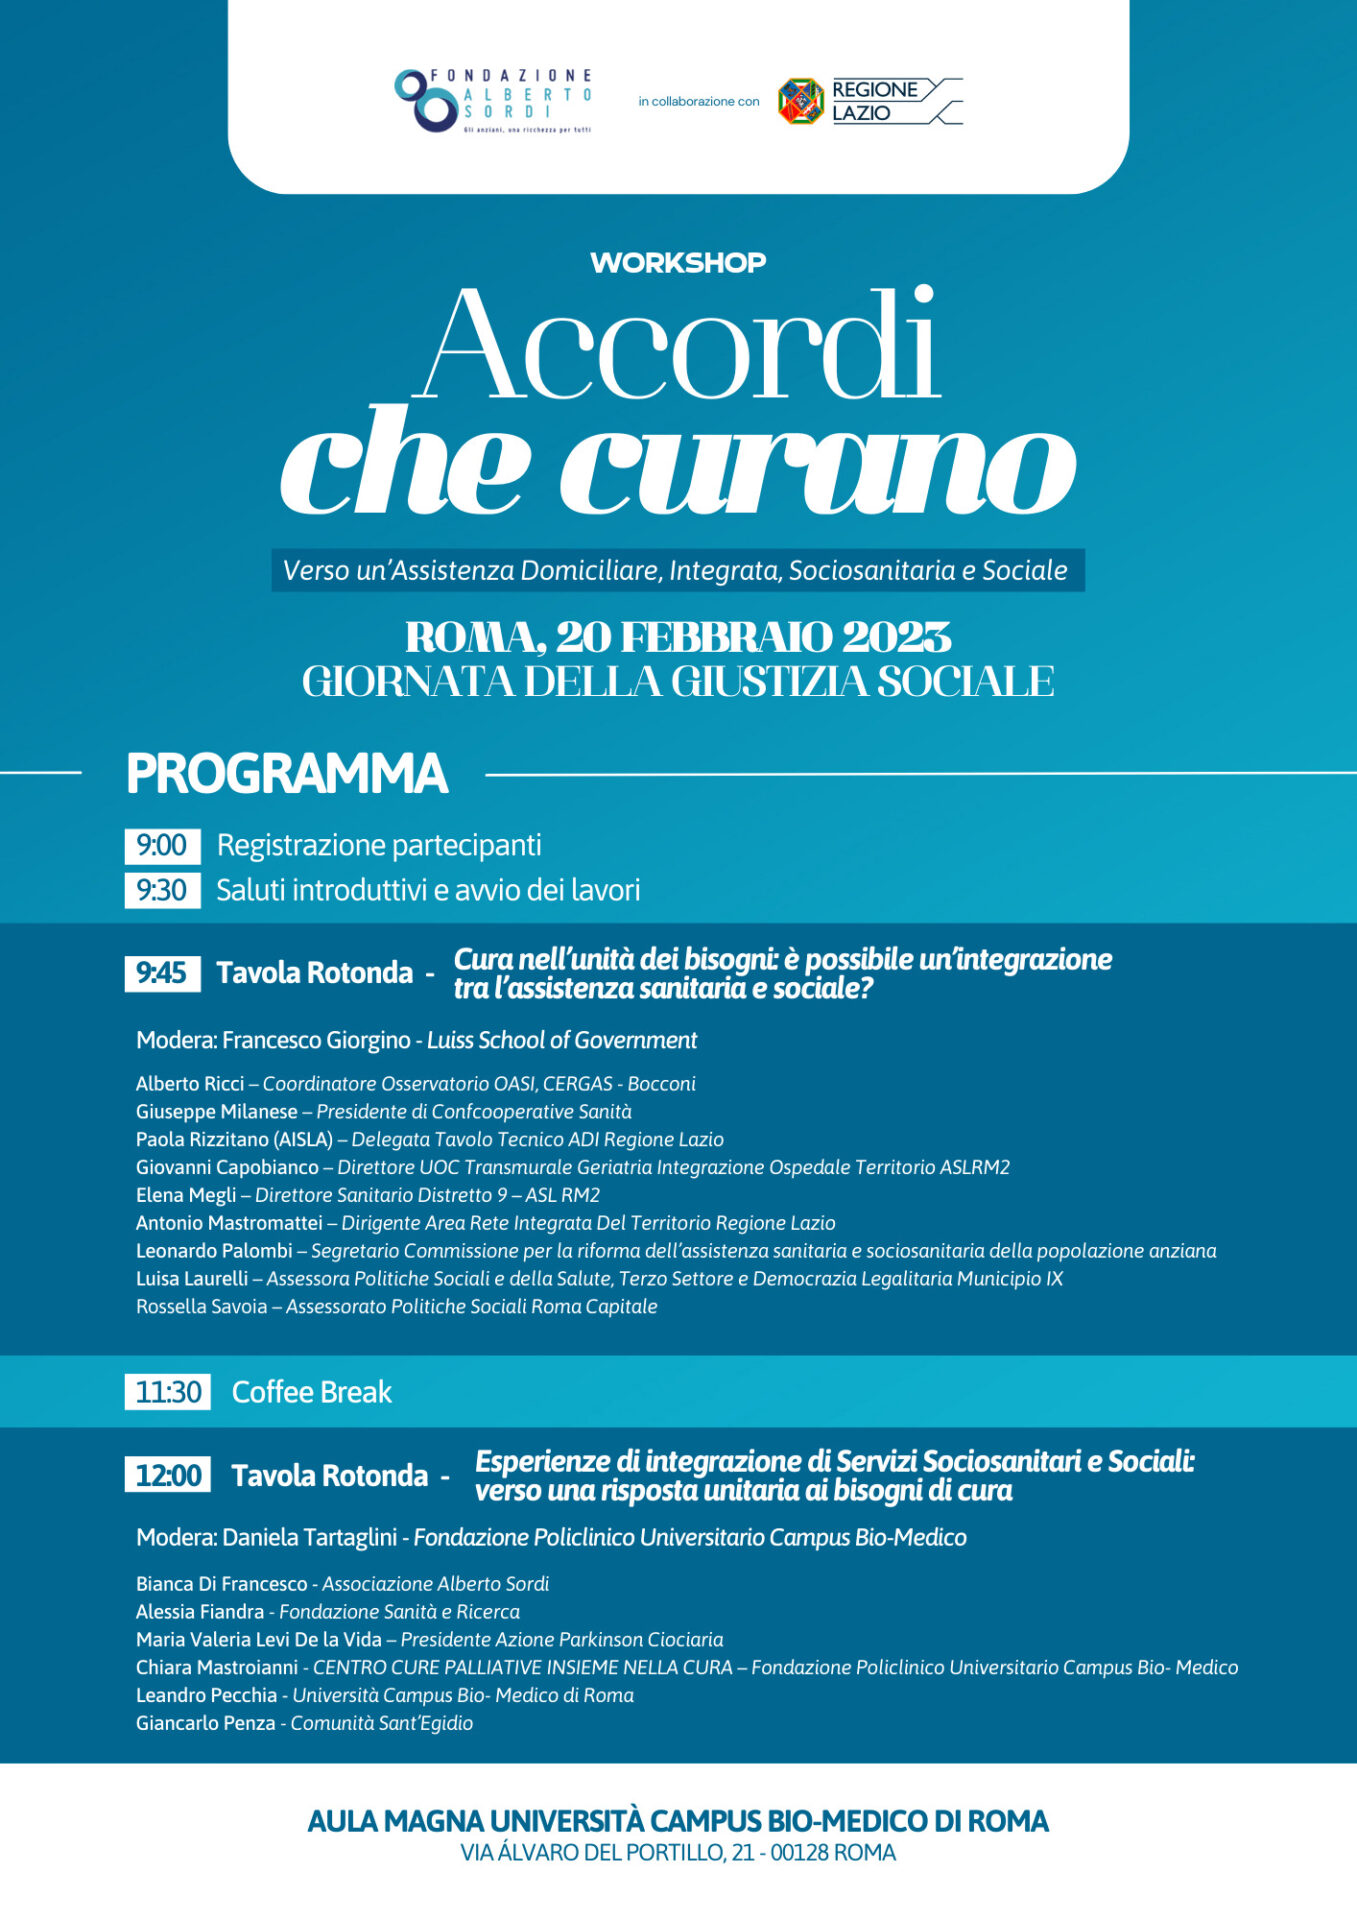 Accordi che Curano - Programma Workshop - Fondazione Alberto Sordi